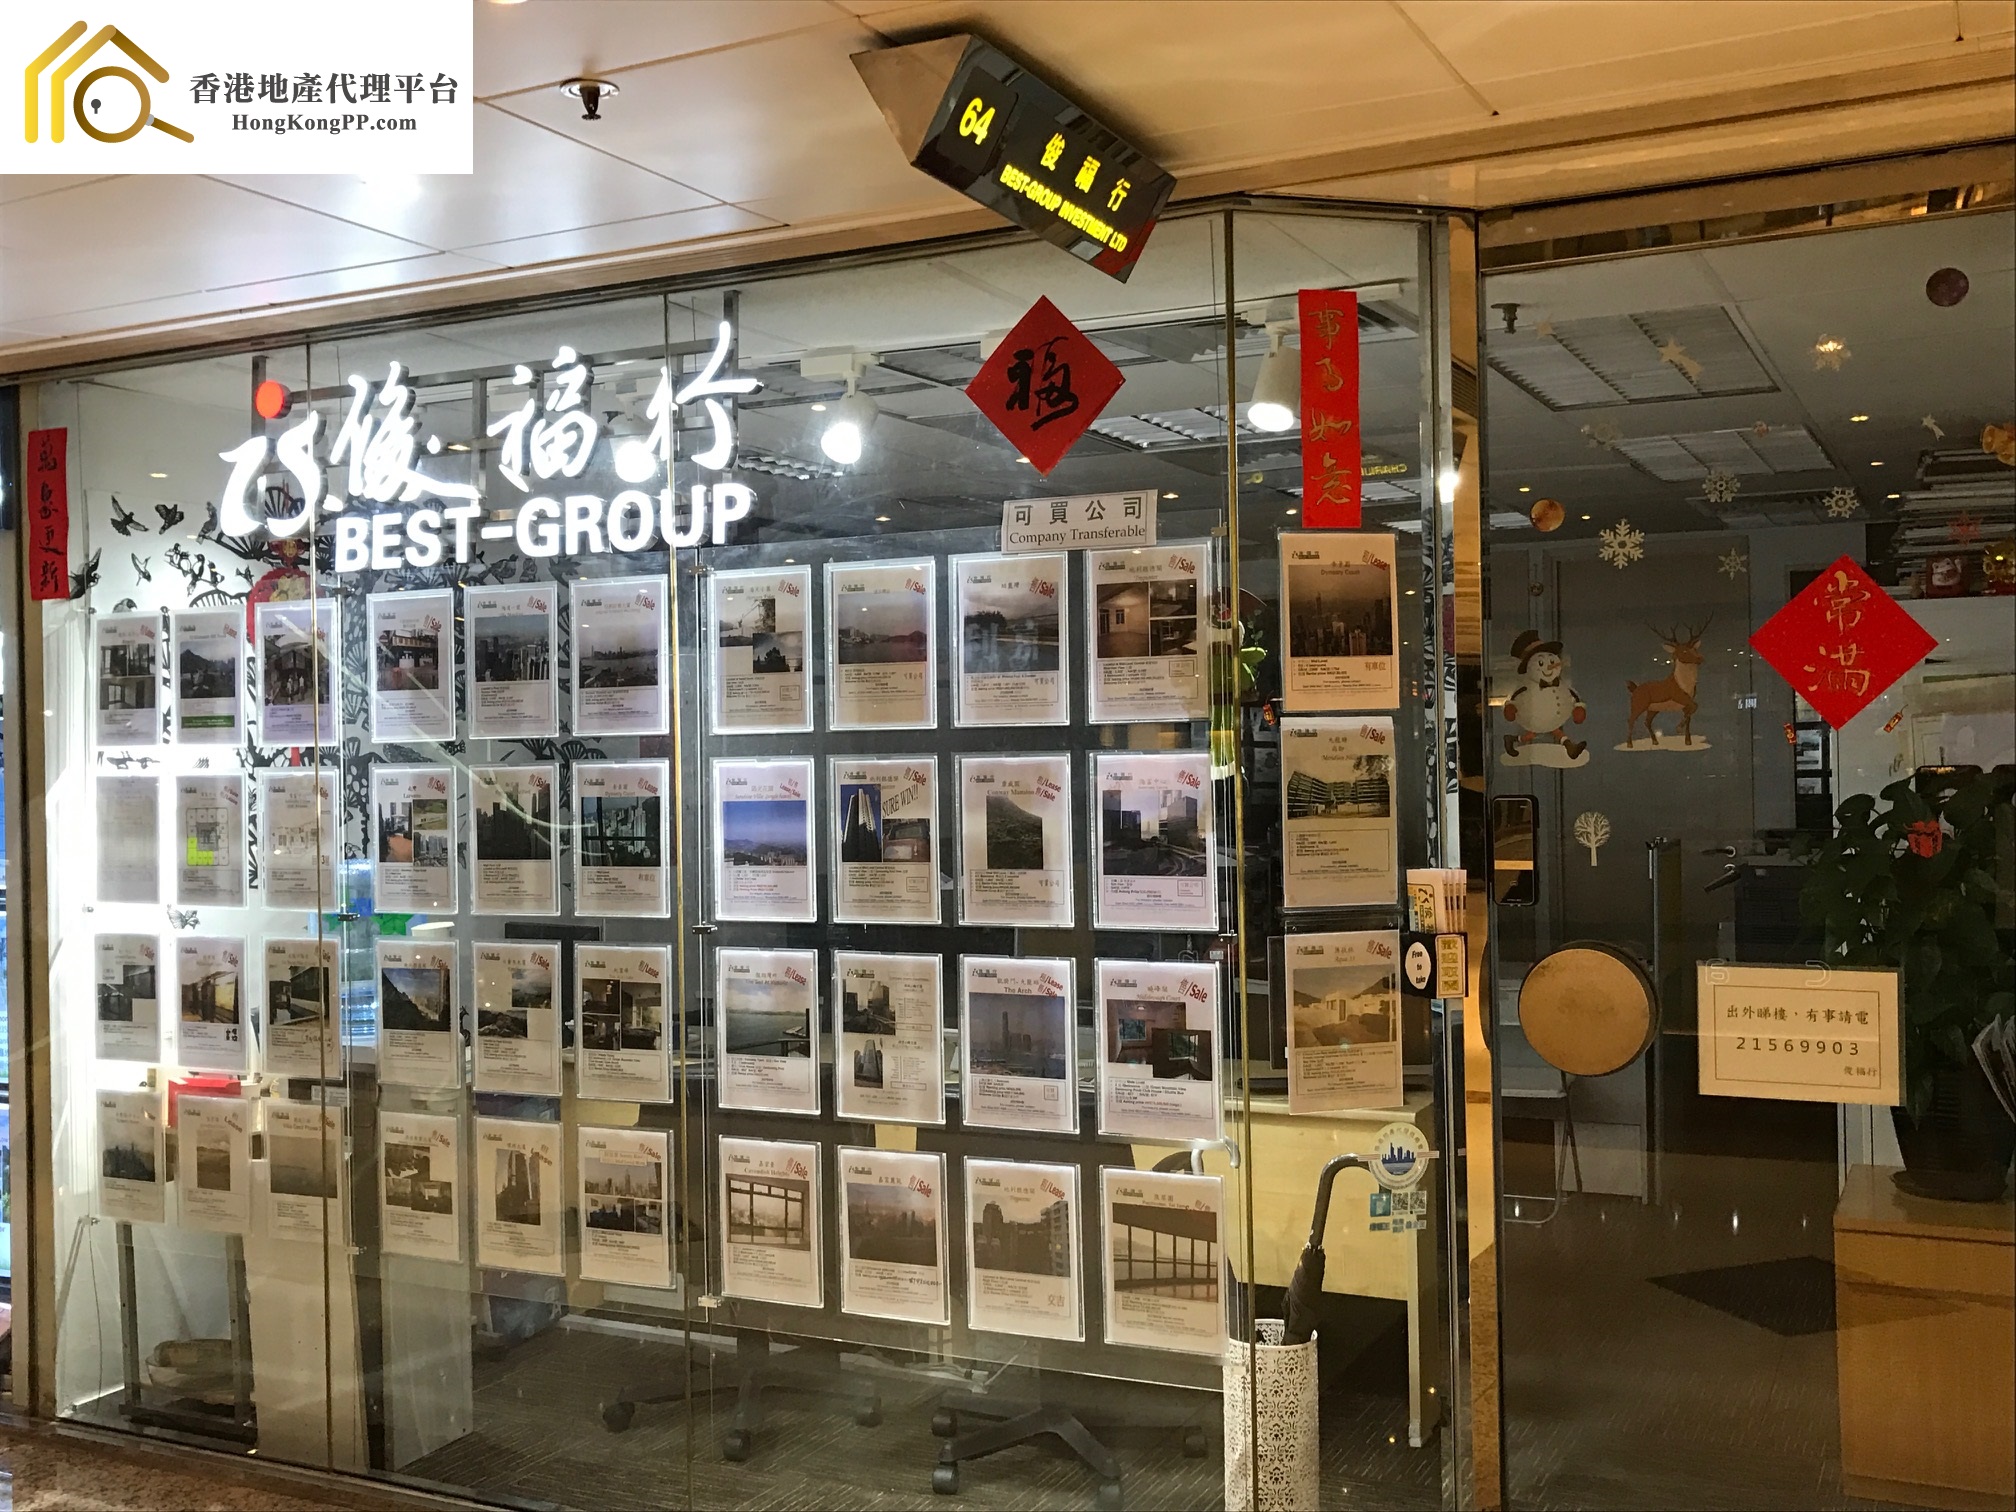 ShopEstate Agent: 俊褔行 Best-Group Investment